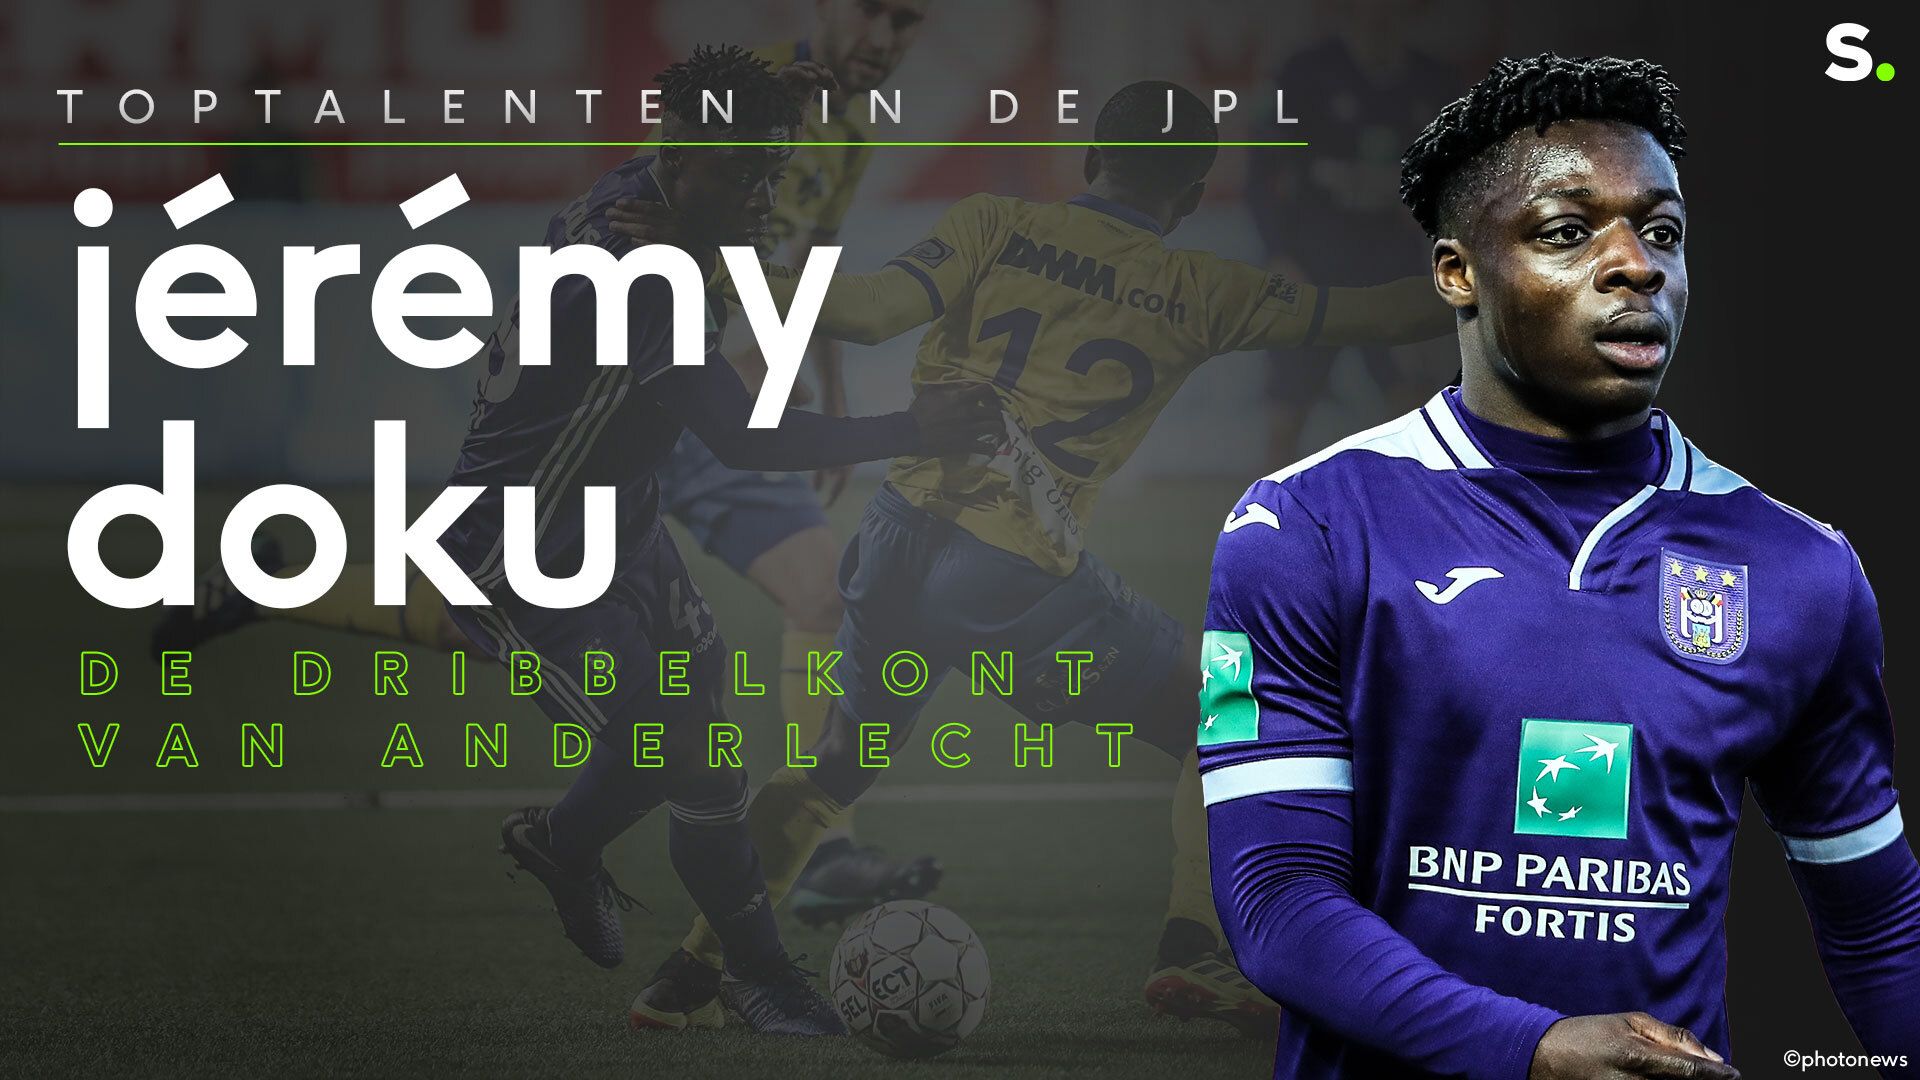 Toptalenten in de JPL: Jérémy Doku, de dribbelkont van Anderlecht. Jupiler Pro League